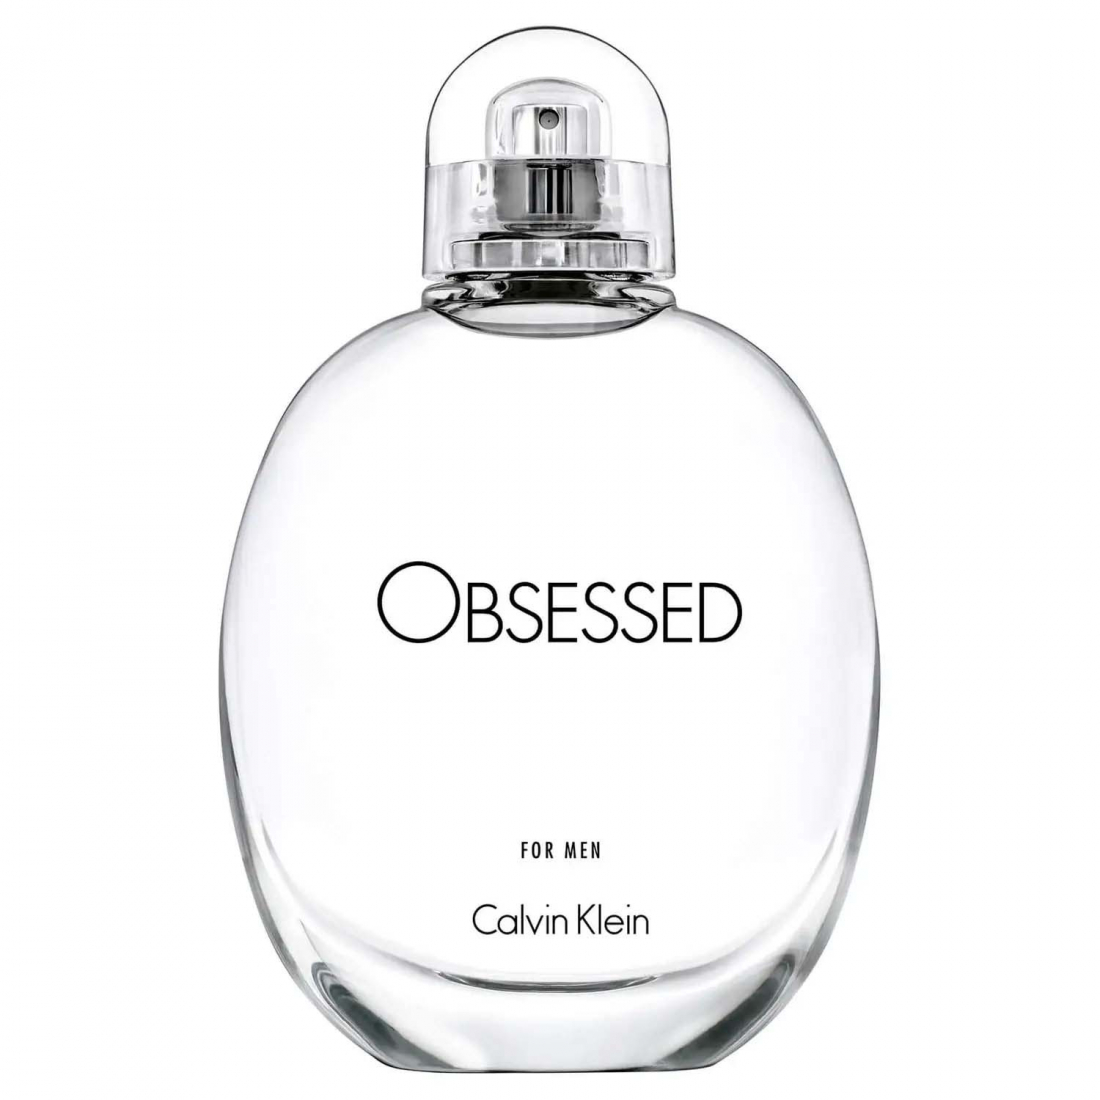 'Obsessed' Eau De Toilette - 30 ml